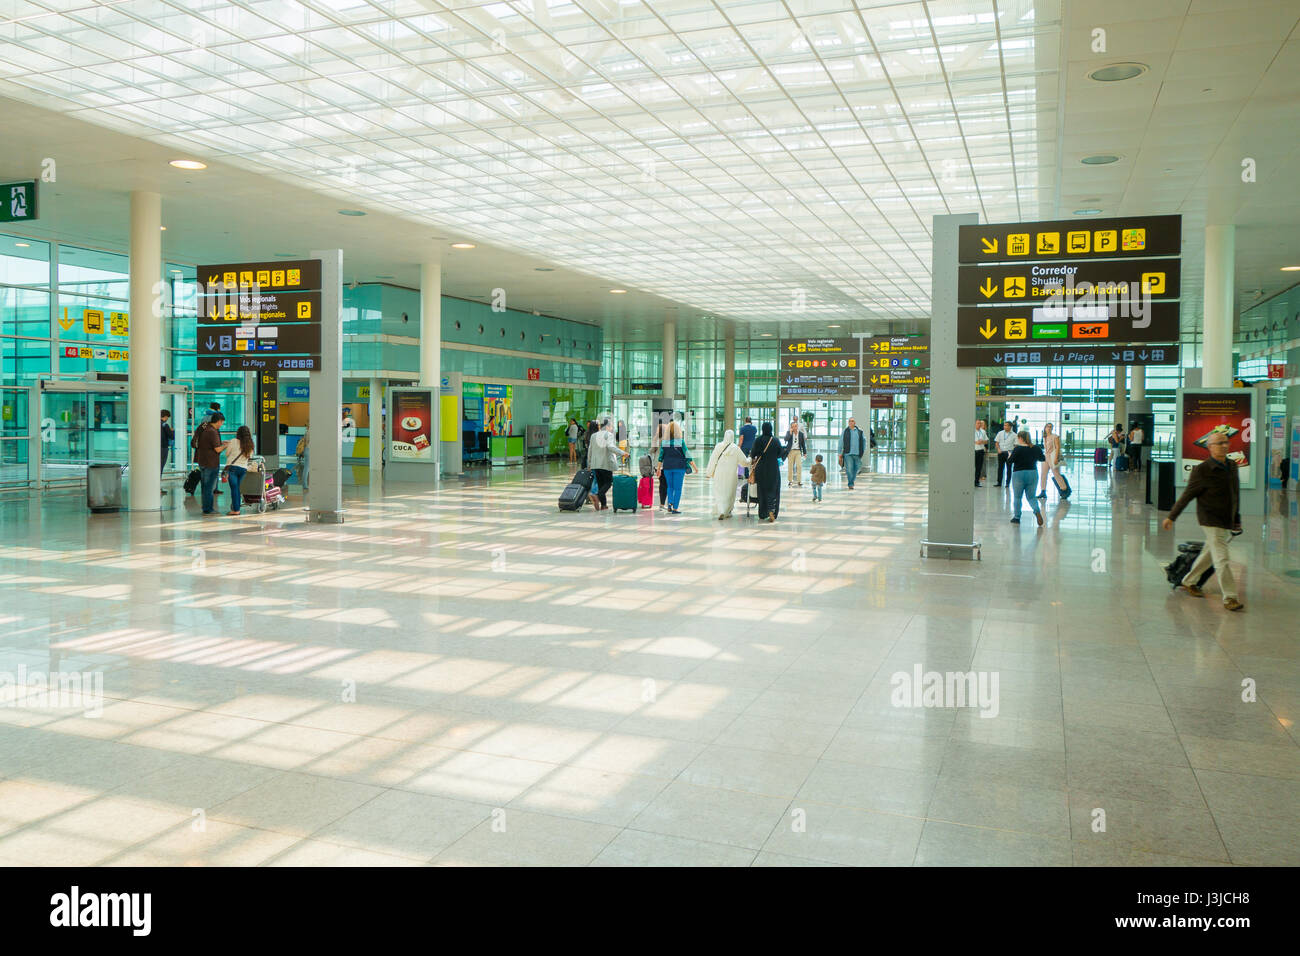 Barcelone, Espagne - 8 août, 2015 : l'intérieur du terminal des arrivées marche à travers des capacités avec les panneaux et l'information autour de l'aéroport. Banque D'Images